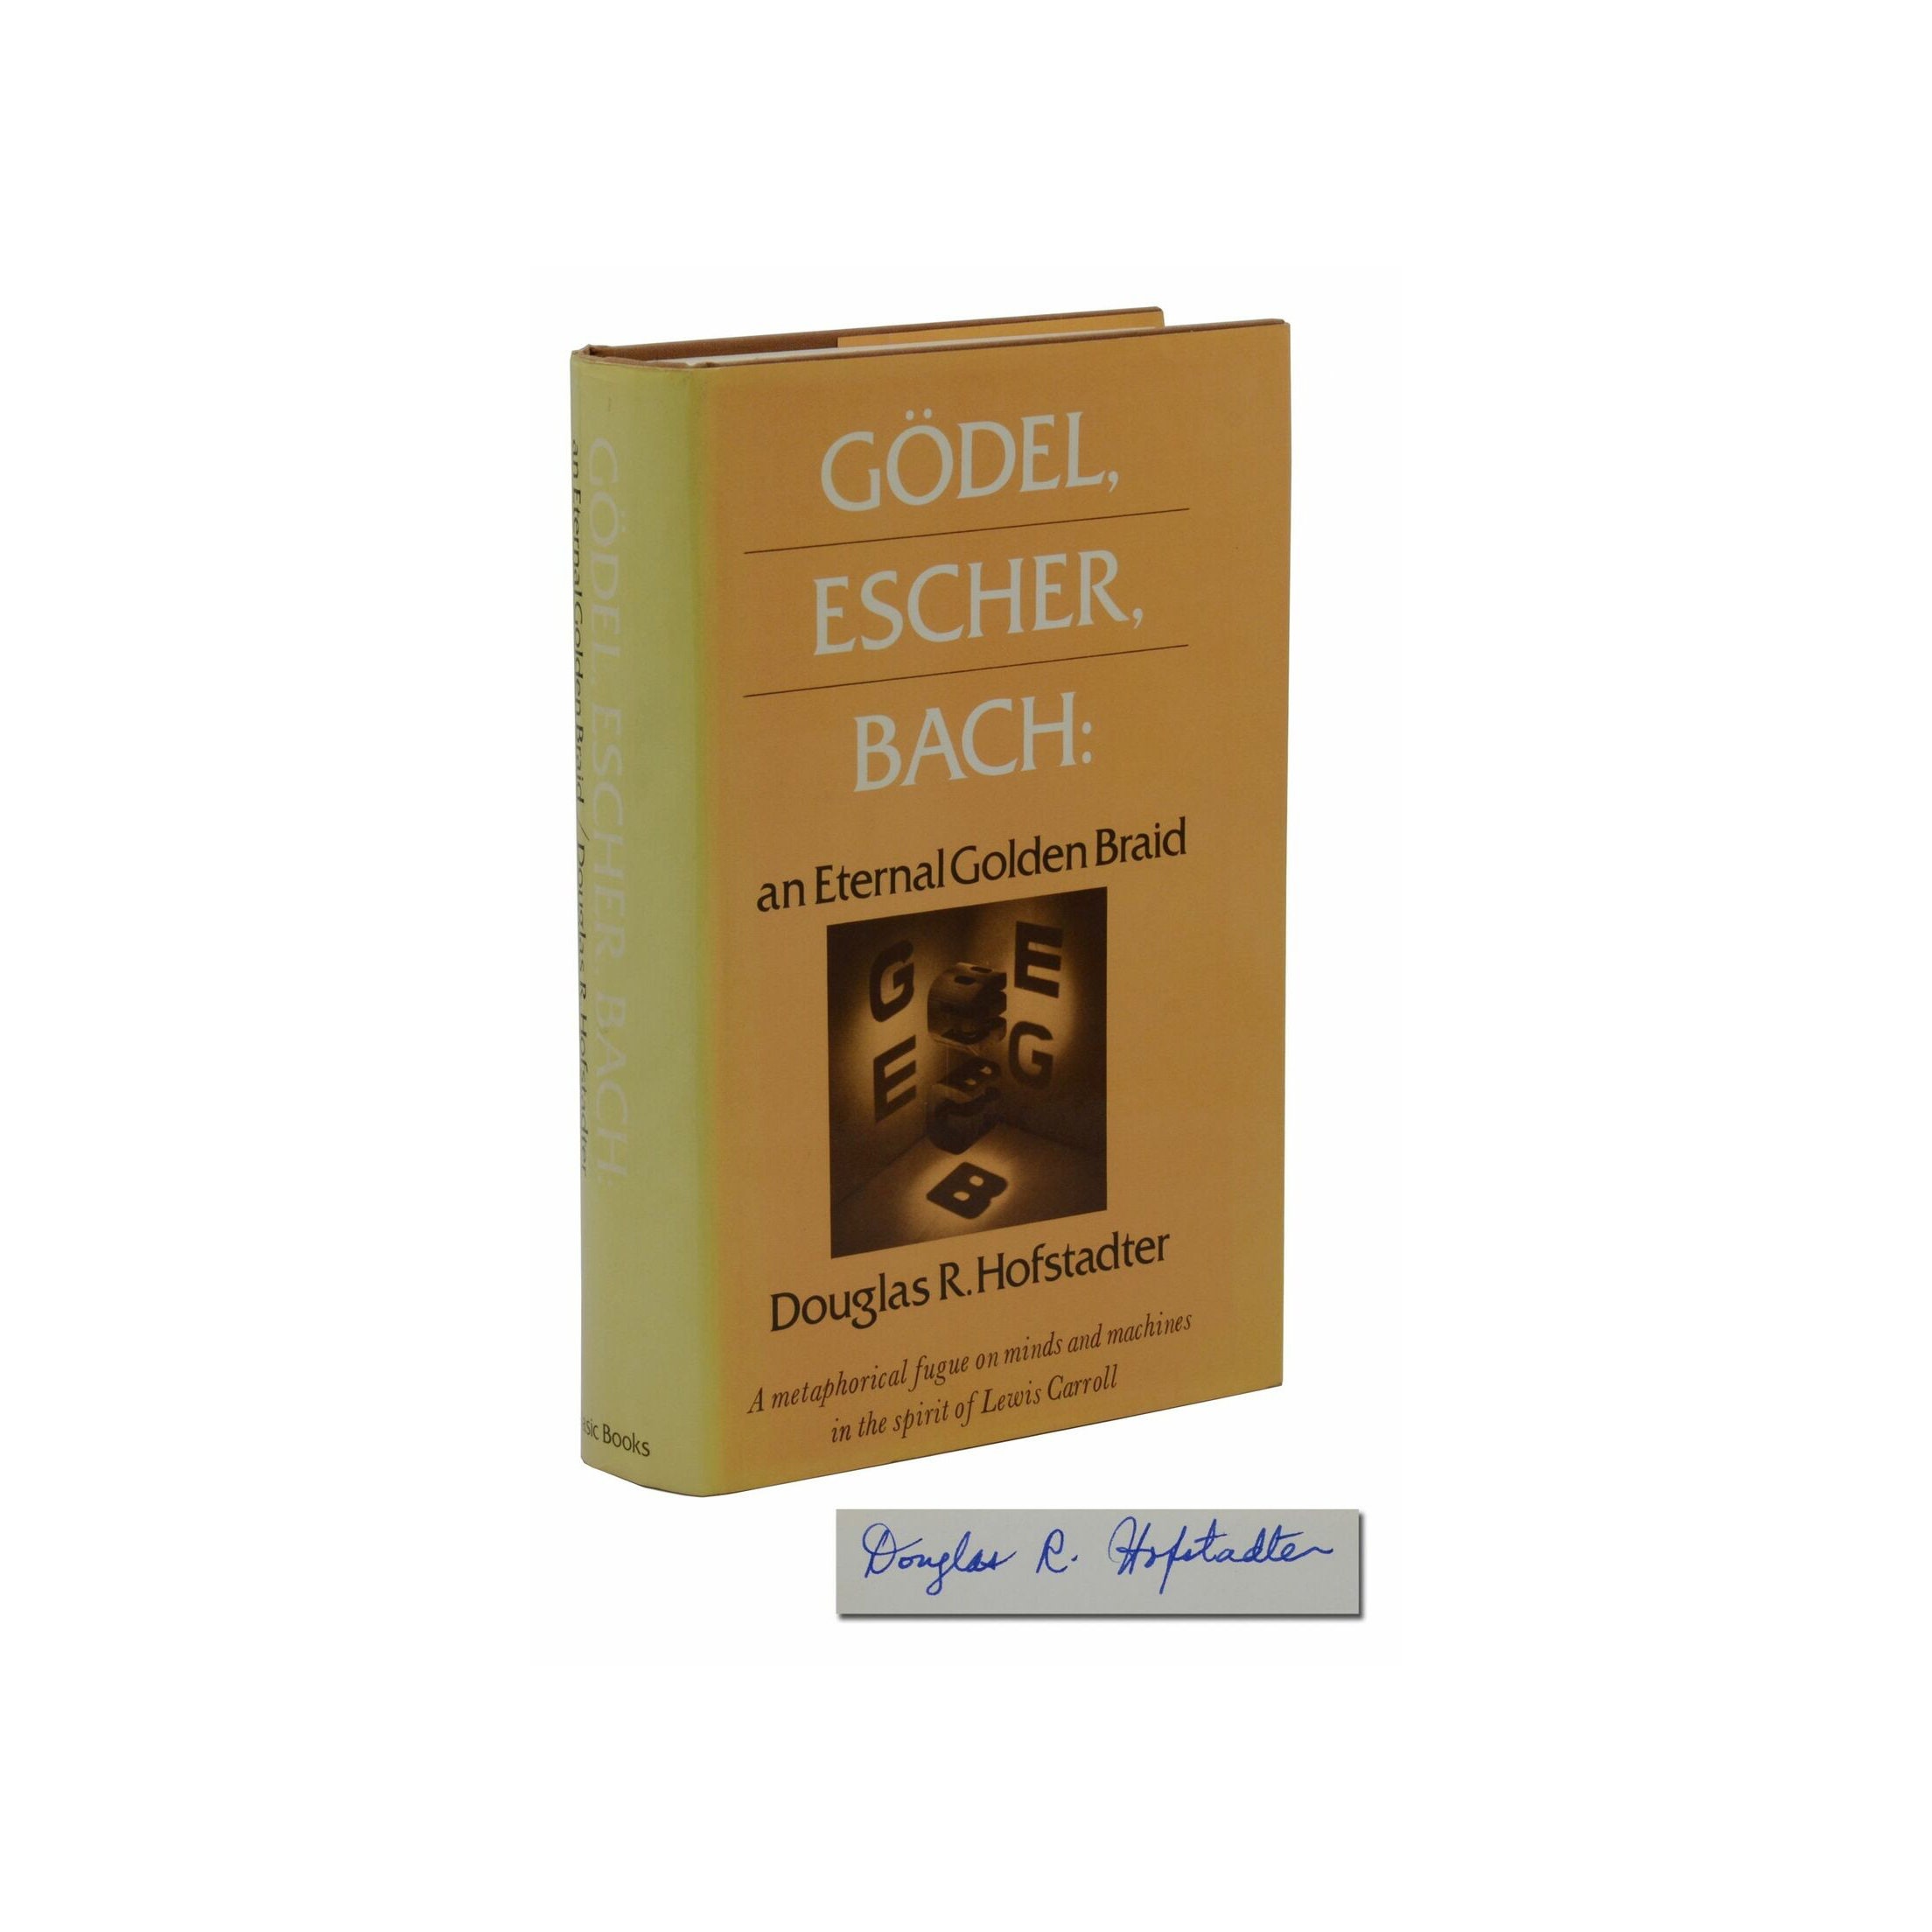 Gödel, Escher, Bach: Una eterna trenza dorada o también Un